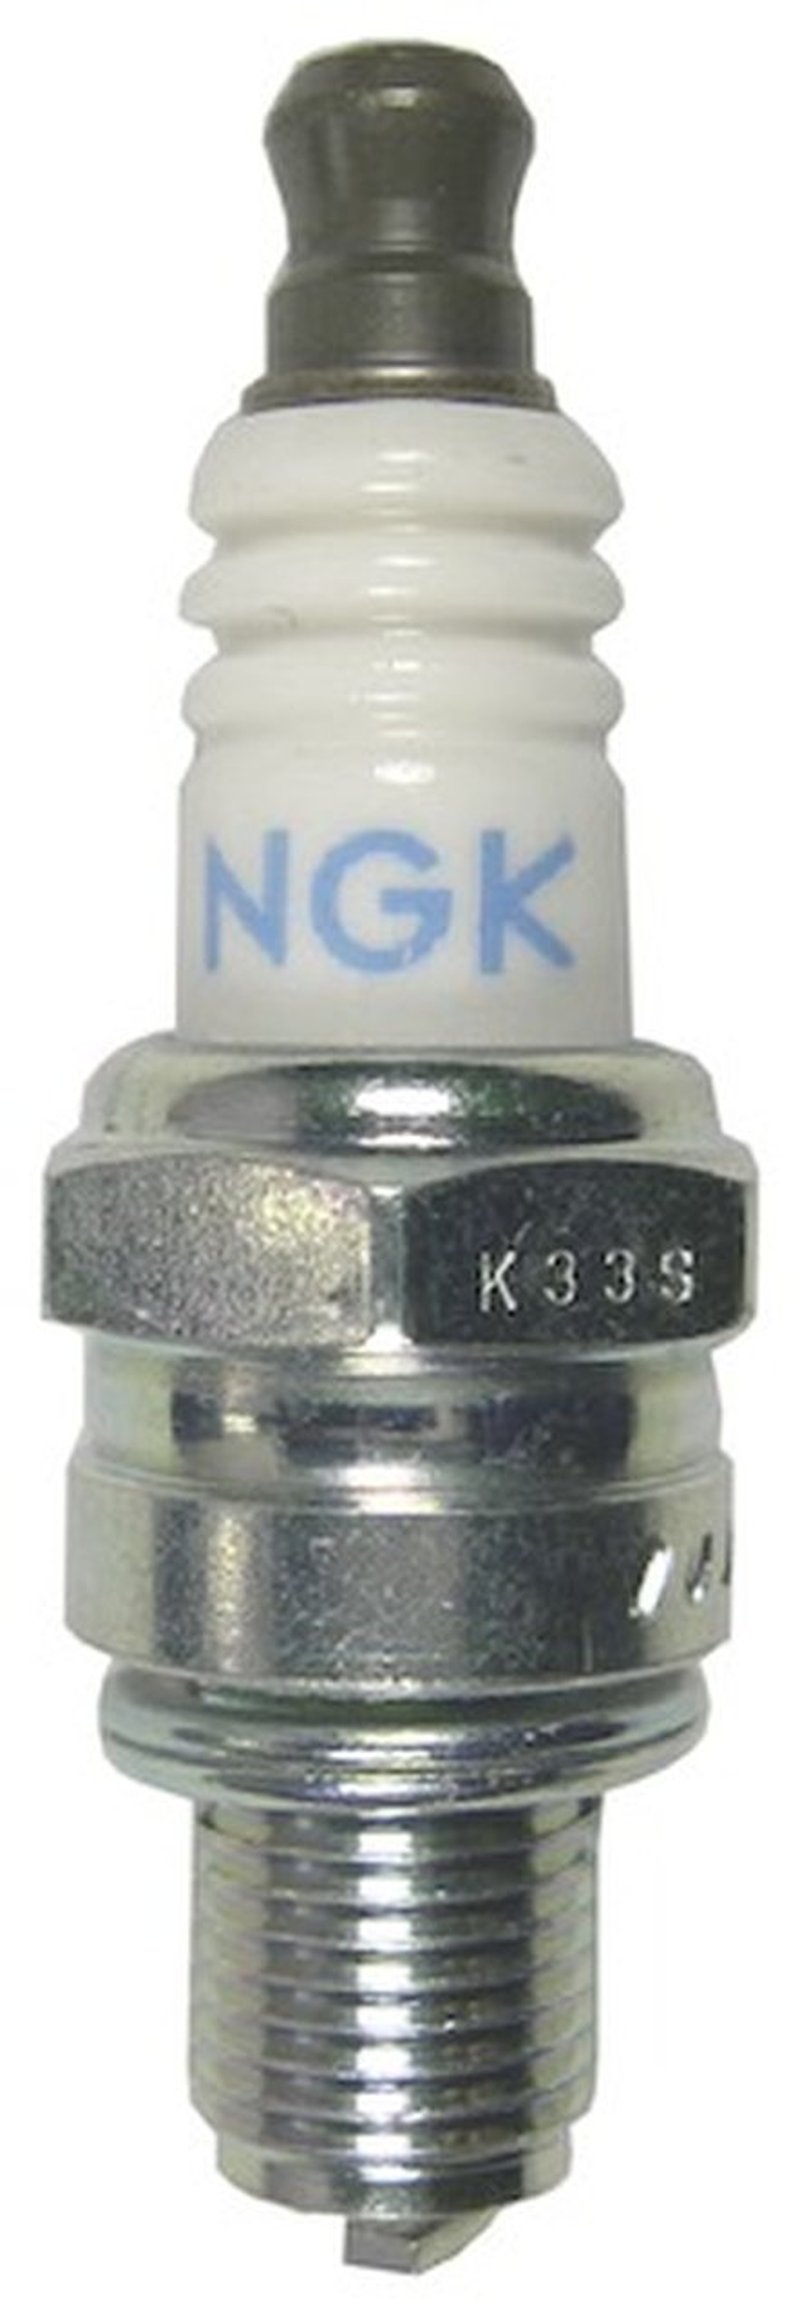 10x NGK Standard Spark Plug Stock 7599 Nickel Core Tip Standard 0.028in CMR5H